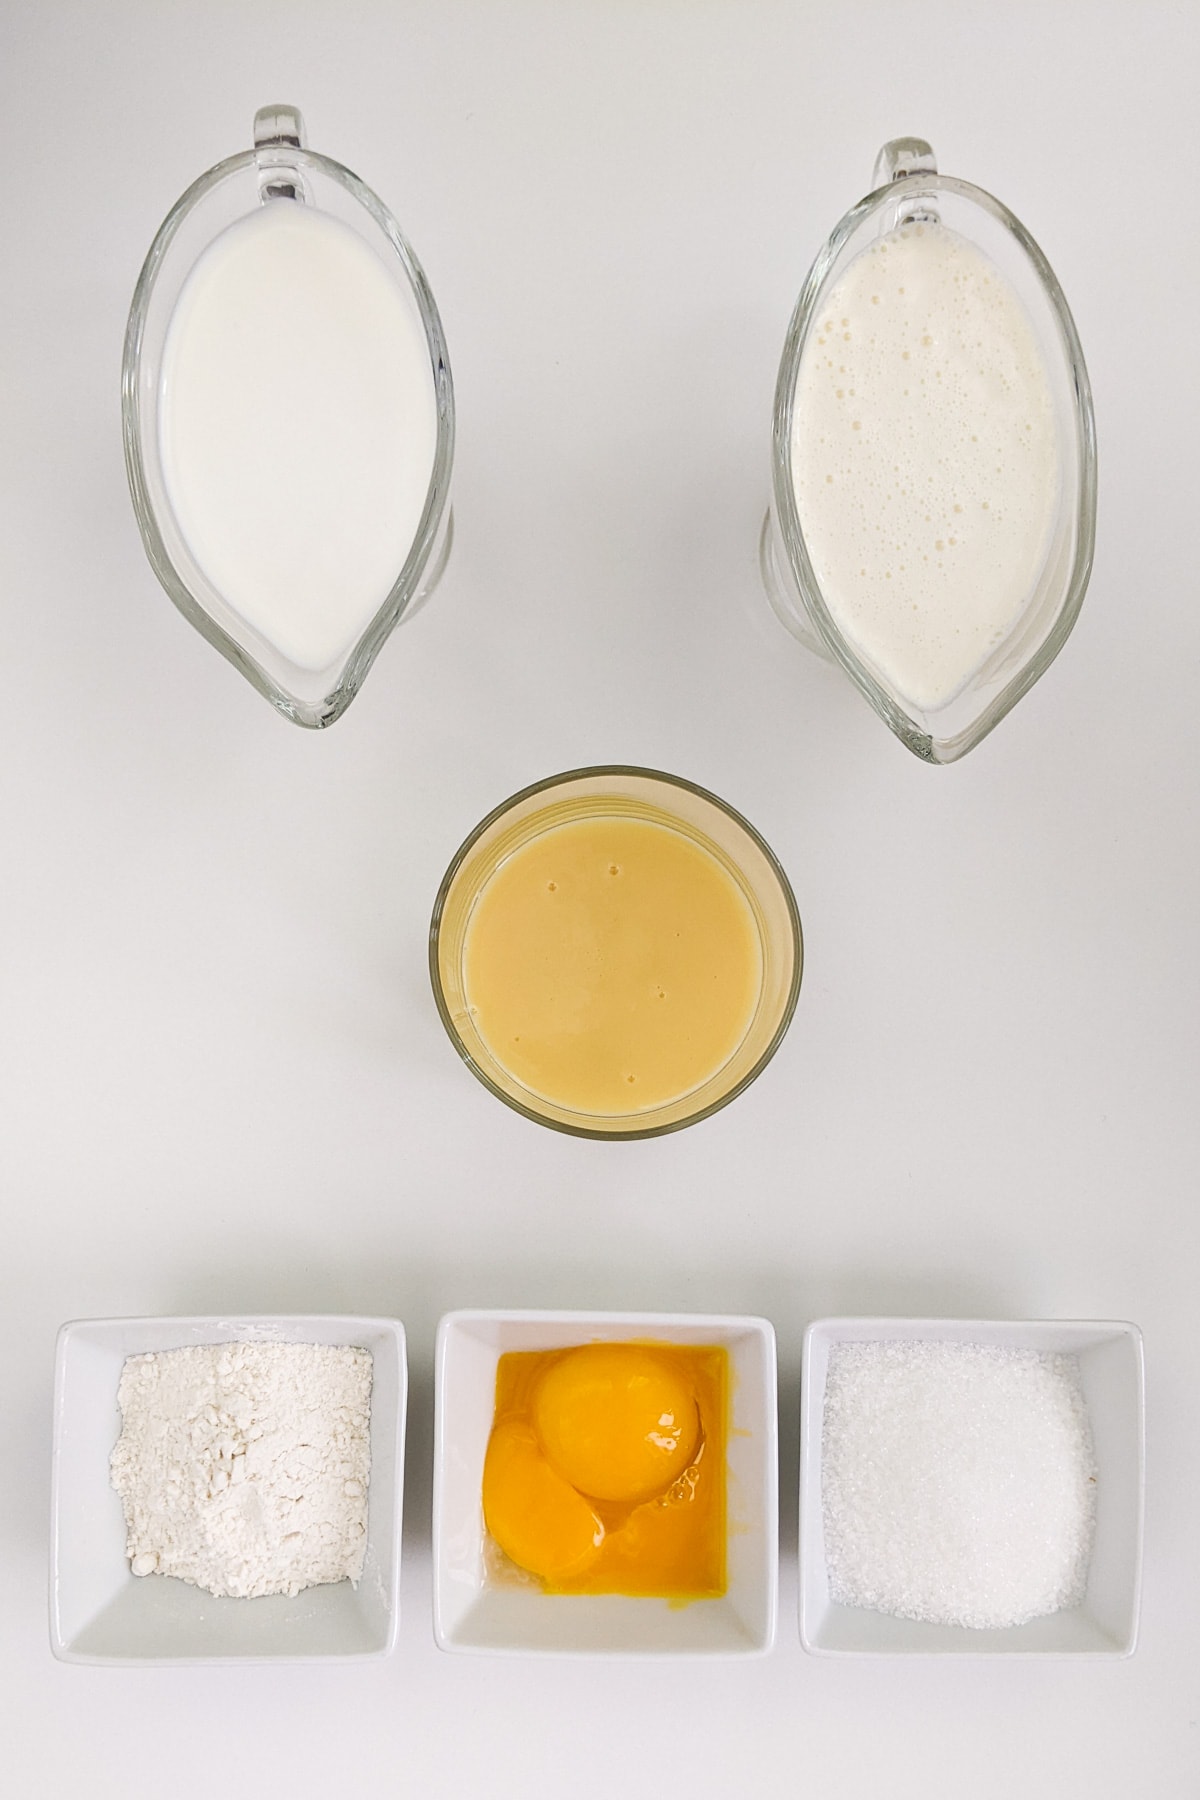 Top view of condensed milk, cream, milk, flour and sugar.